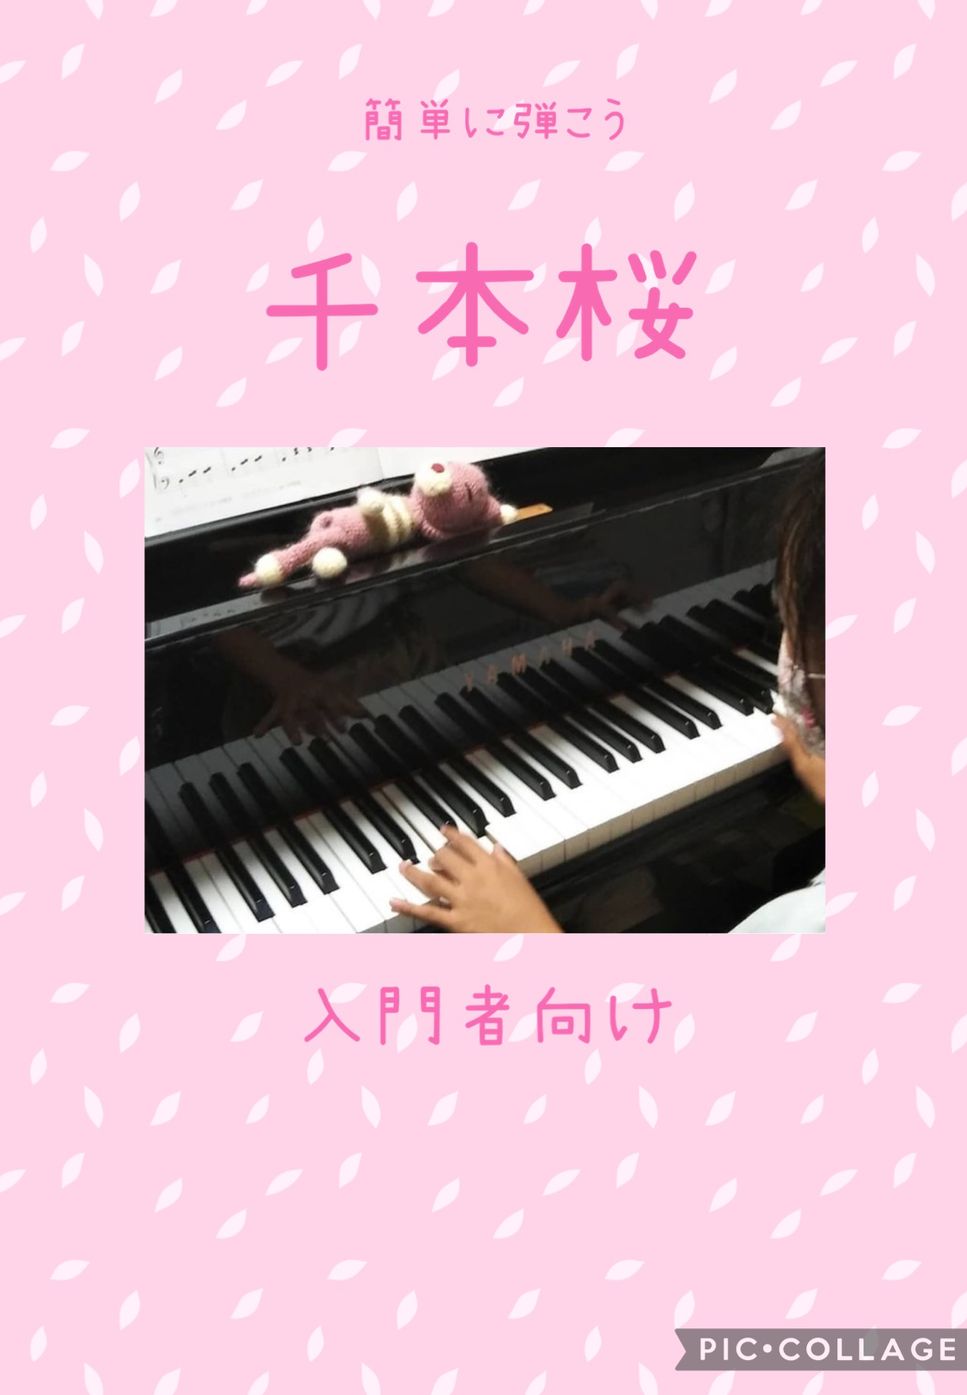 ボカロ - 千本桜 (簡単ピアノ) by ちゃみ